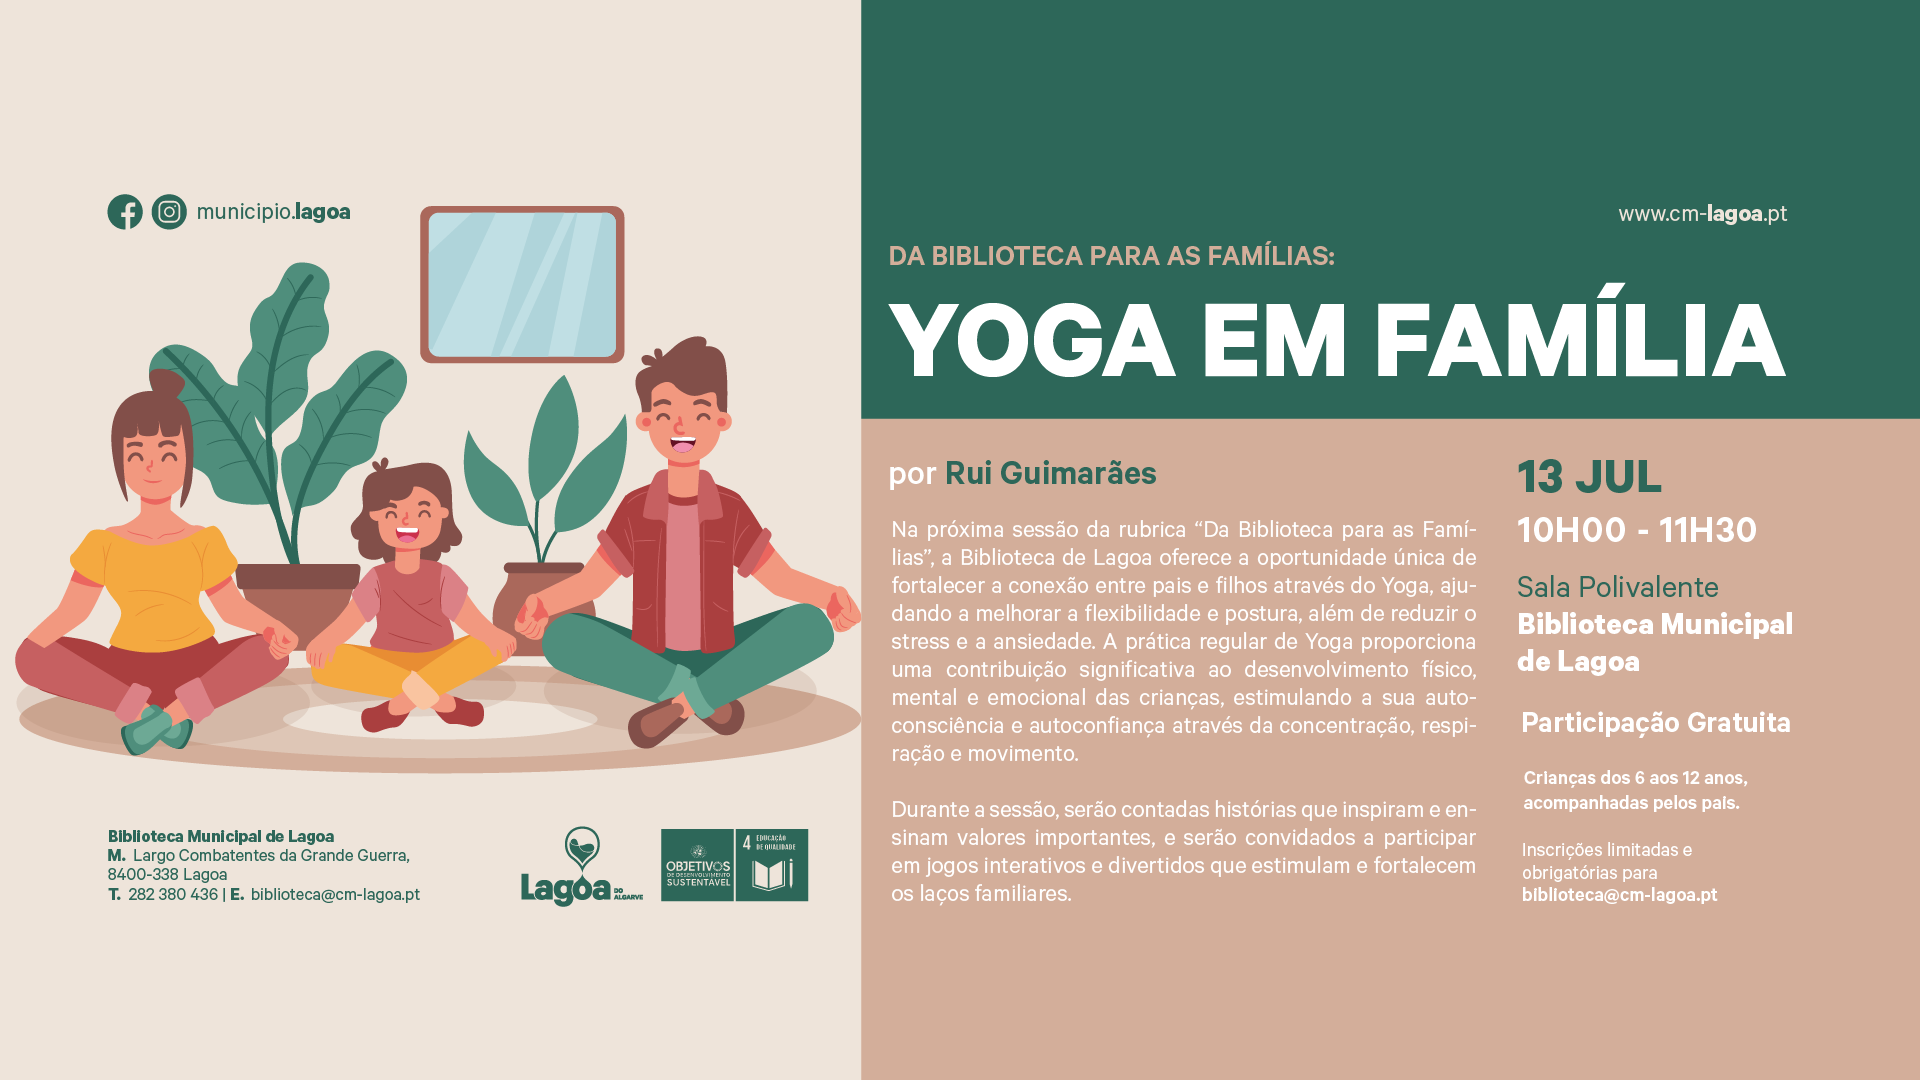 Da Biblioteca para as Famílias: Yoga em Família por Rui Guimarães